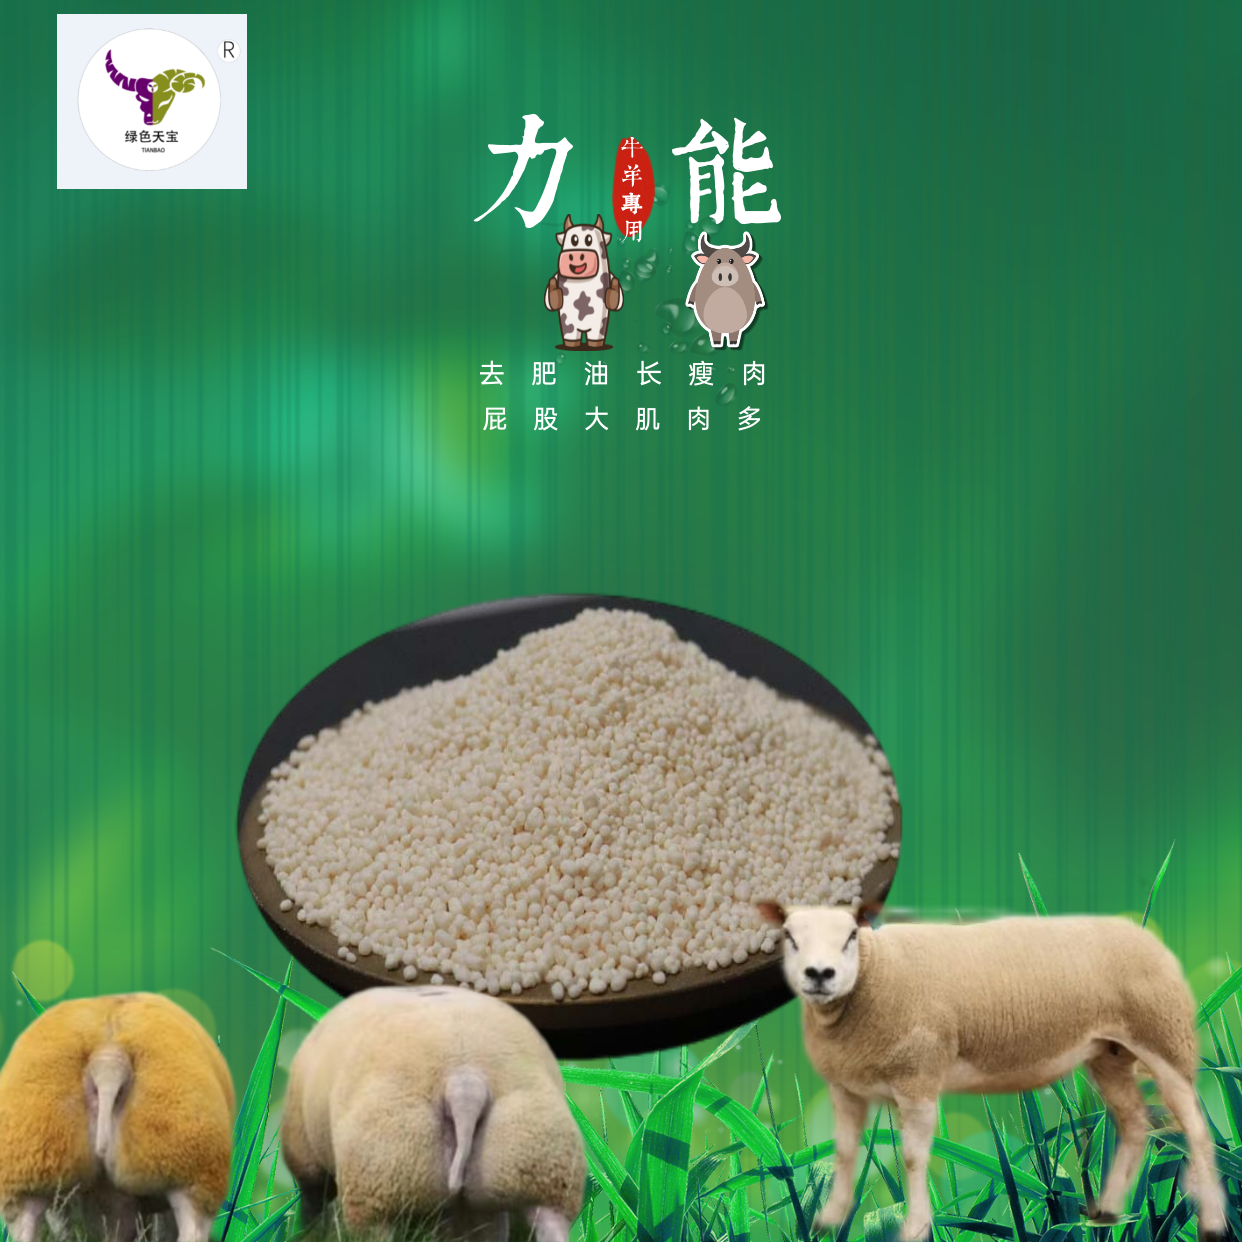 羊羊催肥剂  包膜胍基乙酸小料饲料添加剂增肌塑型提高消化吸收 加快育肥